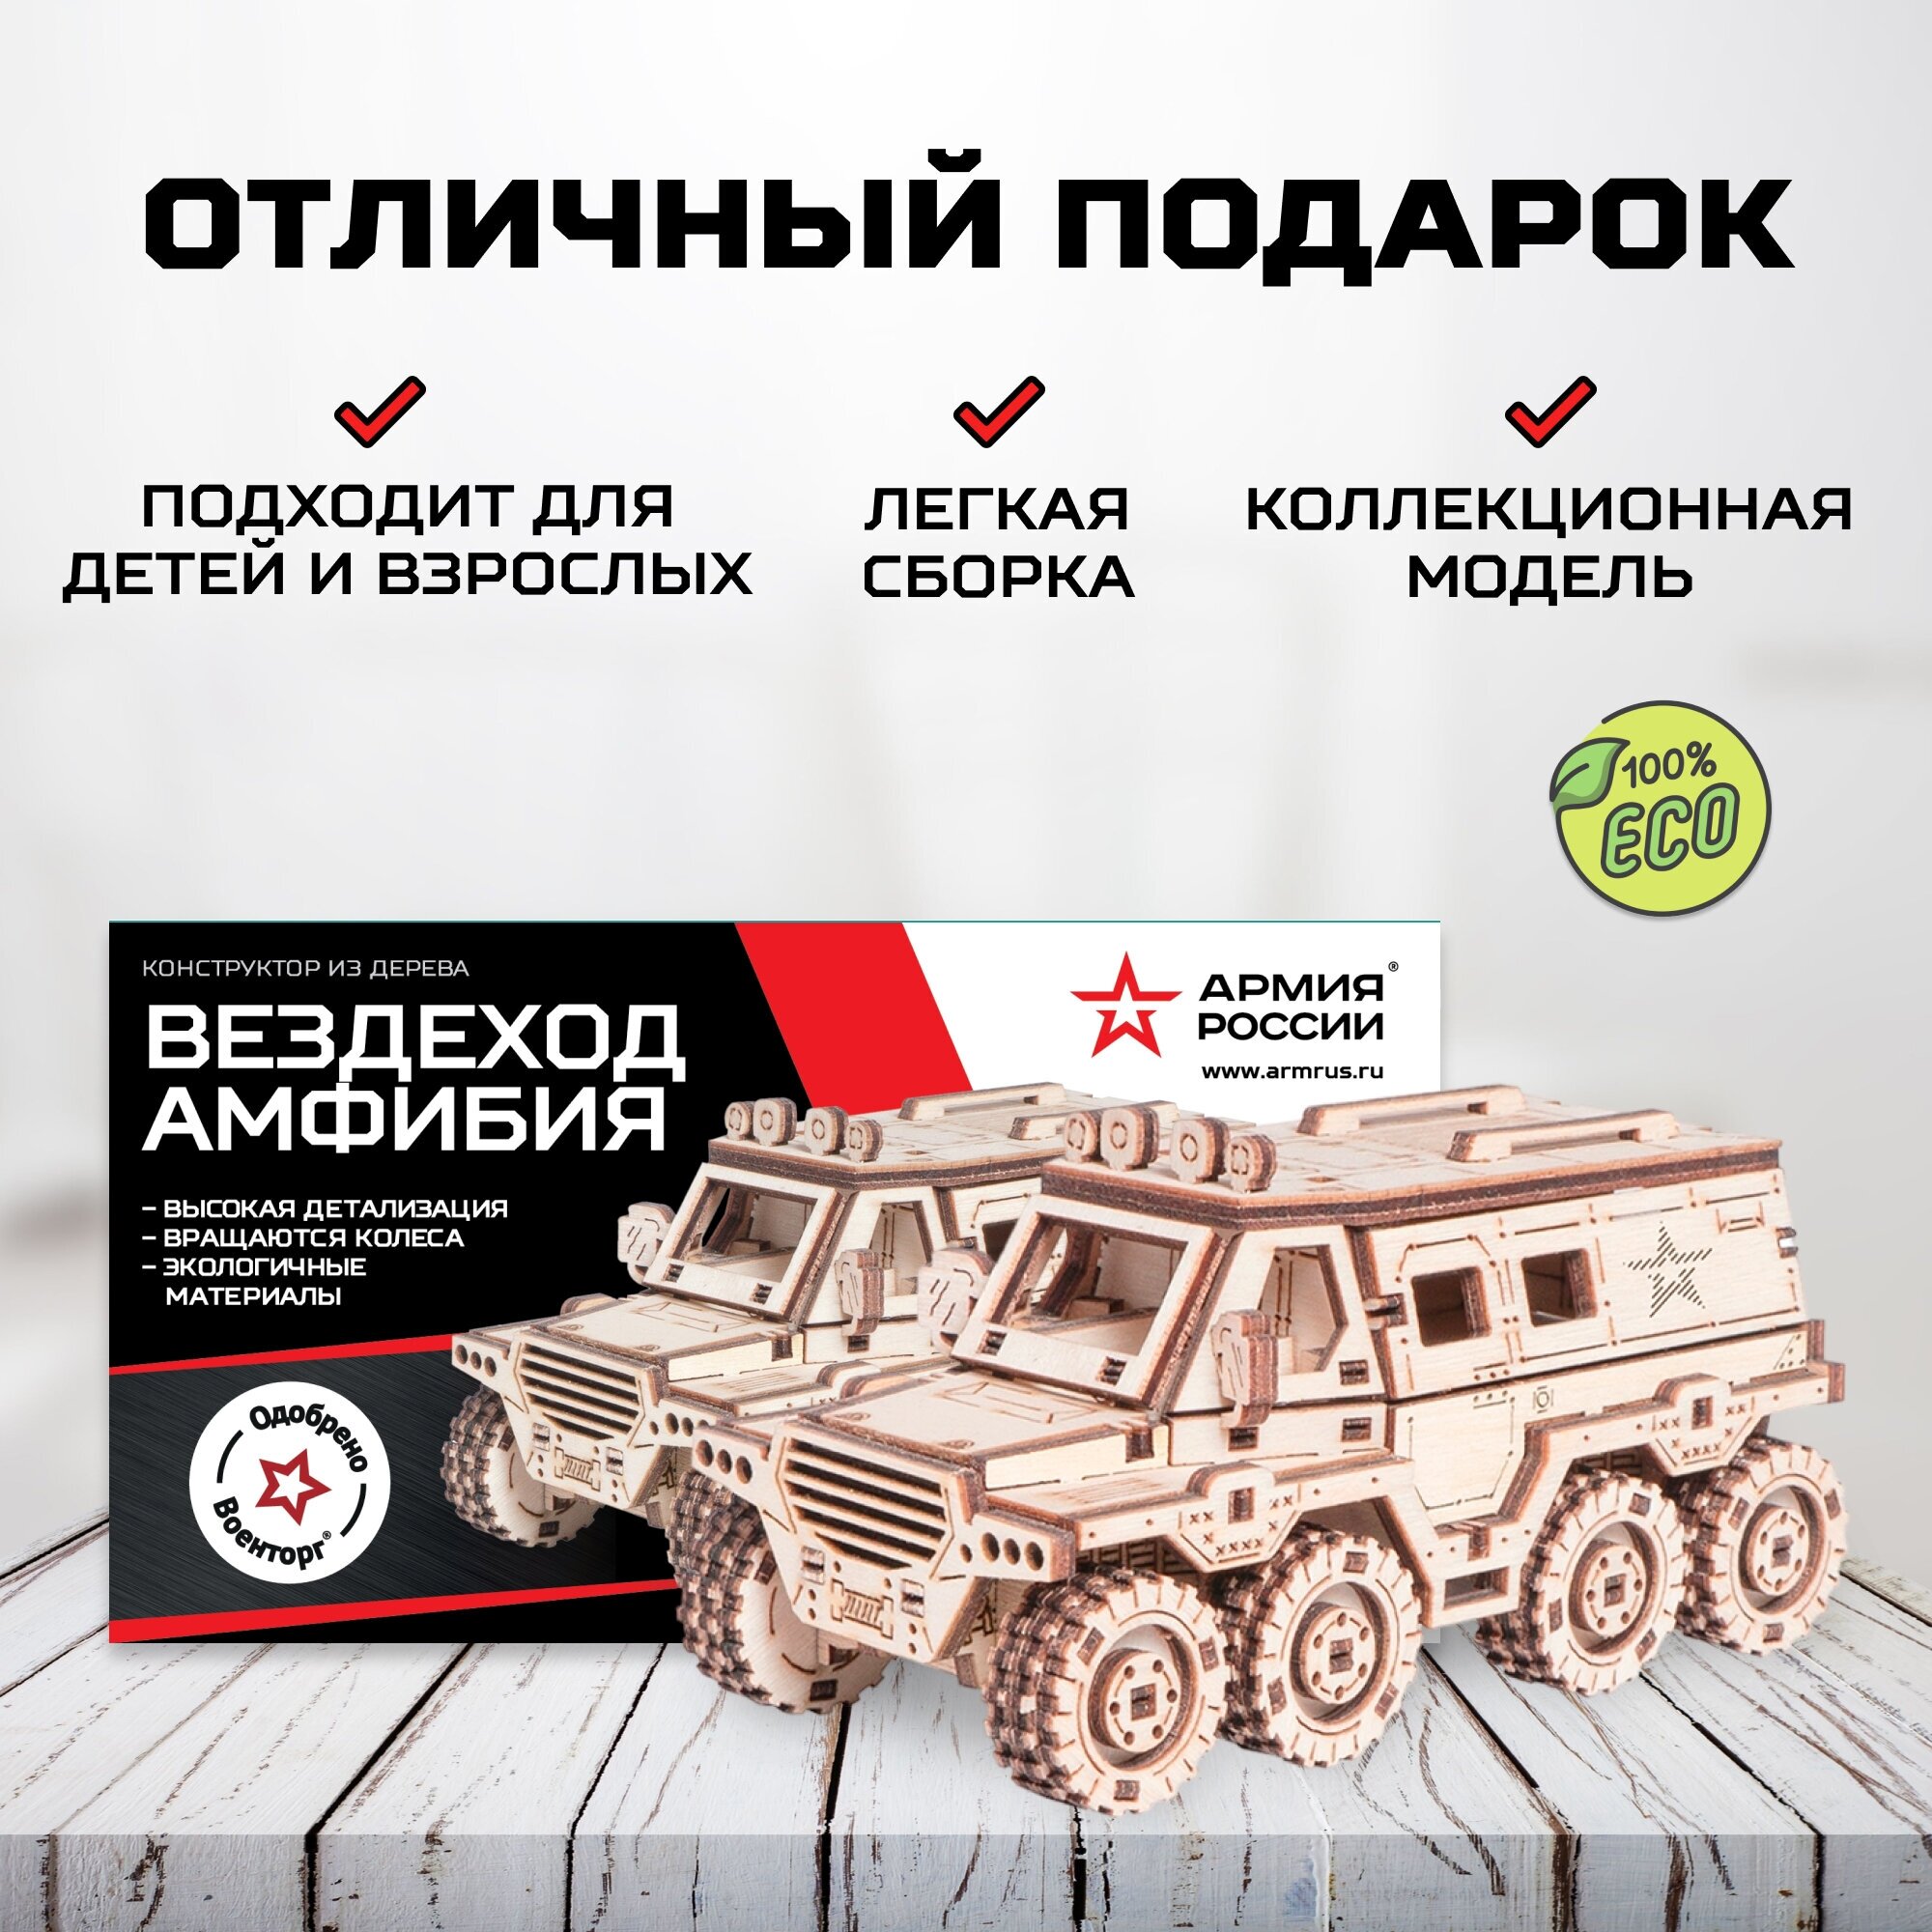 Деревянная игрушка Армия России - фото №5